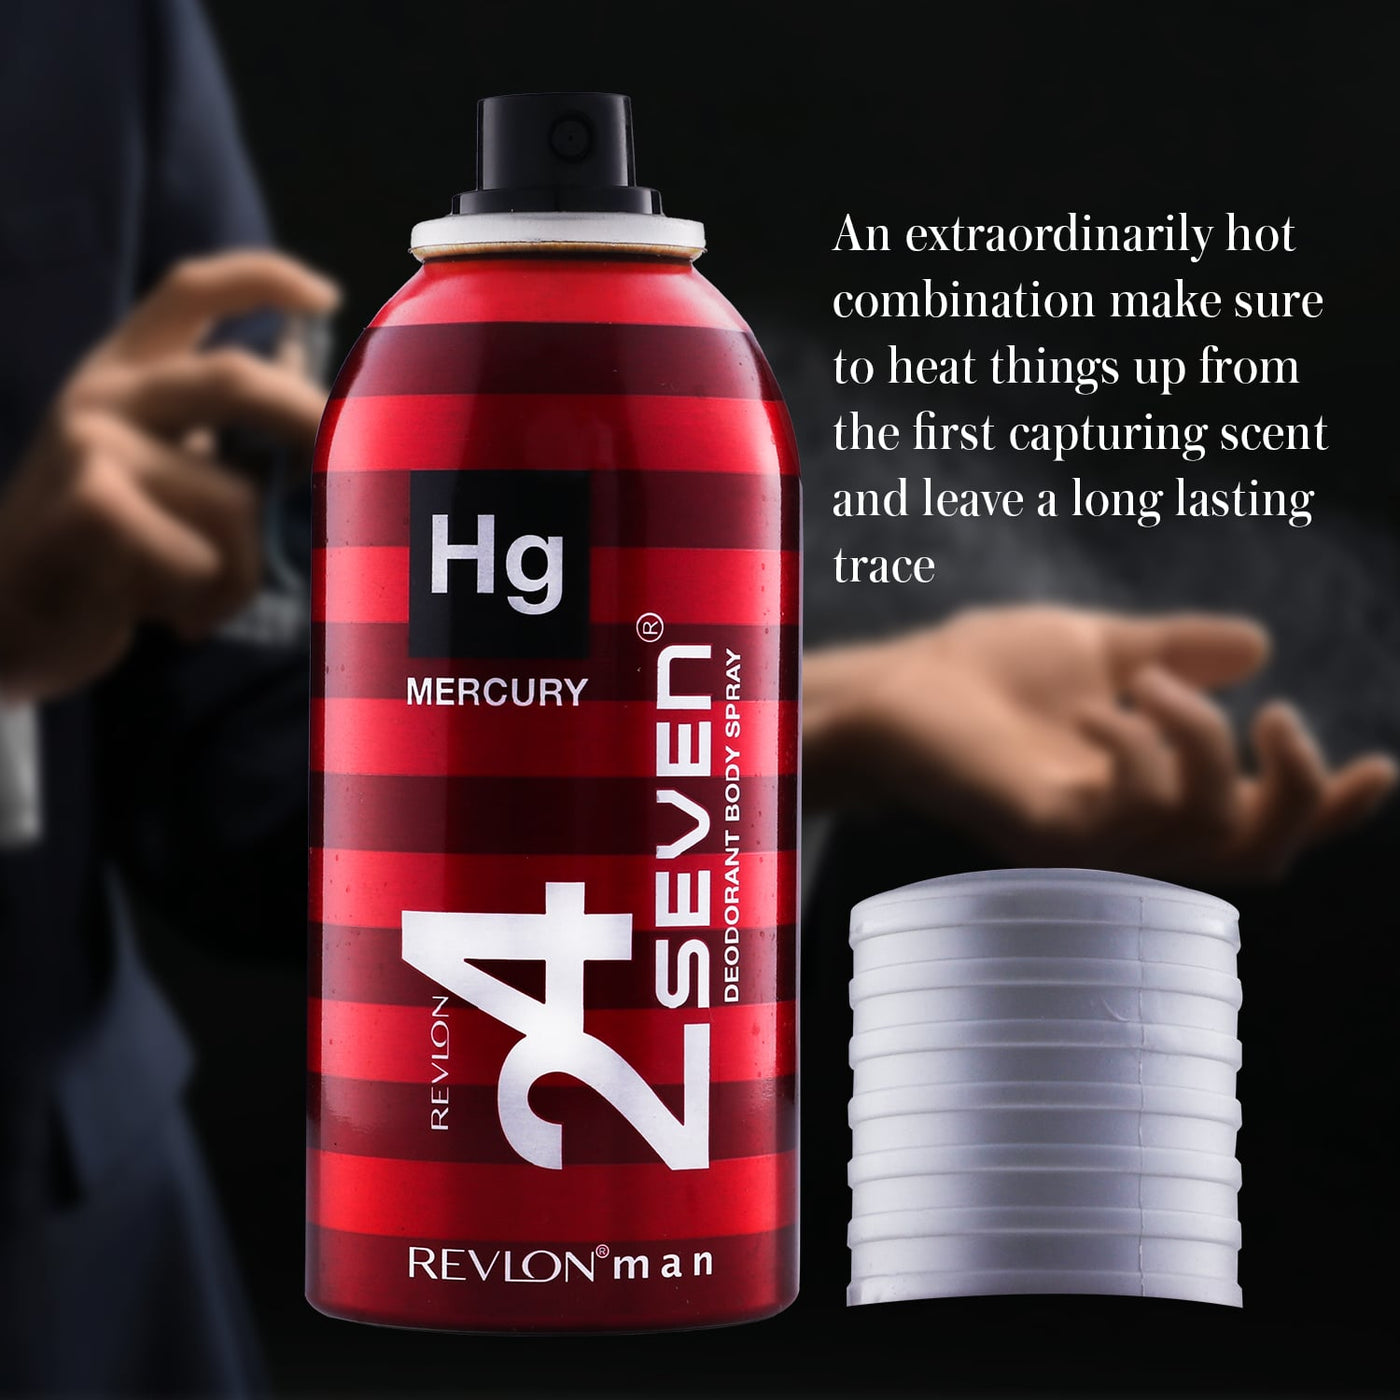 Revlon 24 Seven - Perfumed Body Spray - Special Offer